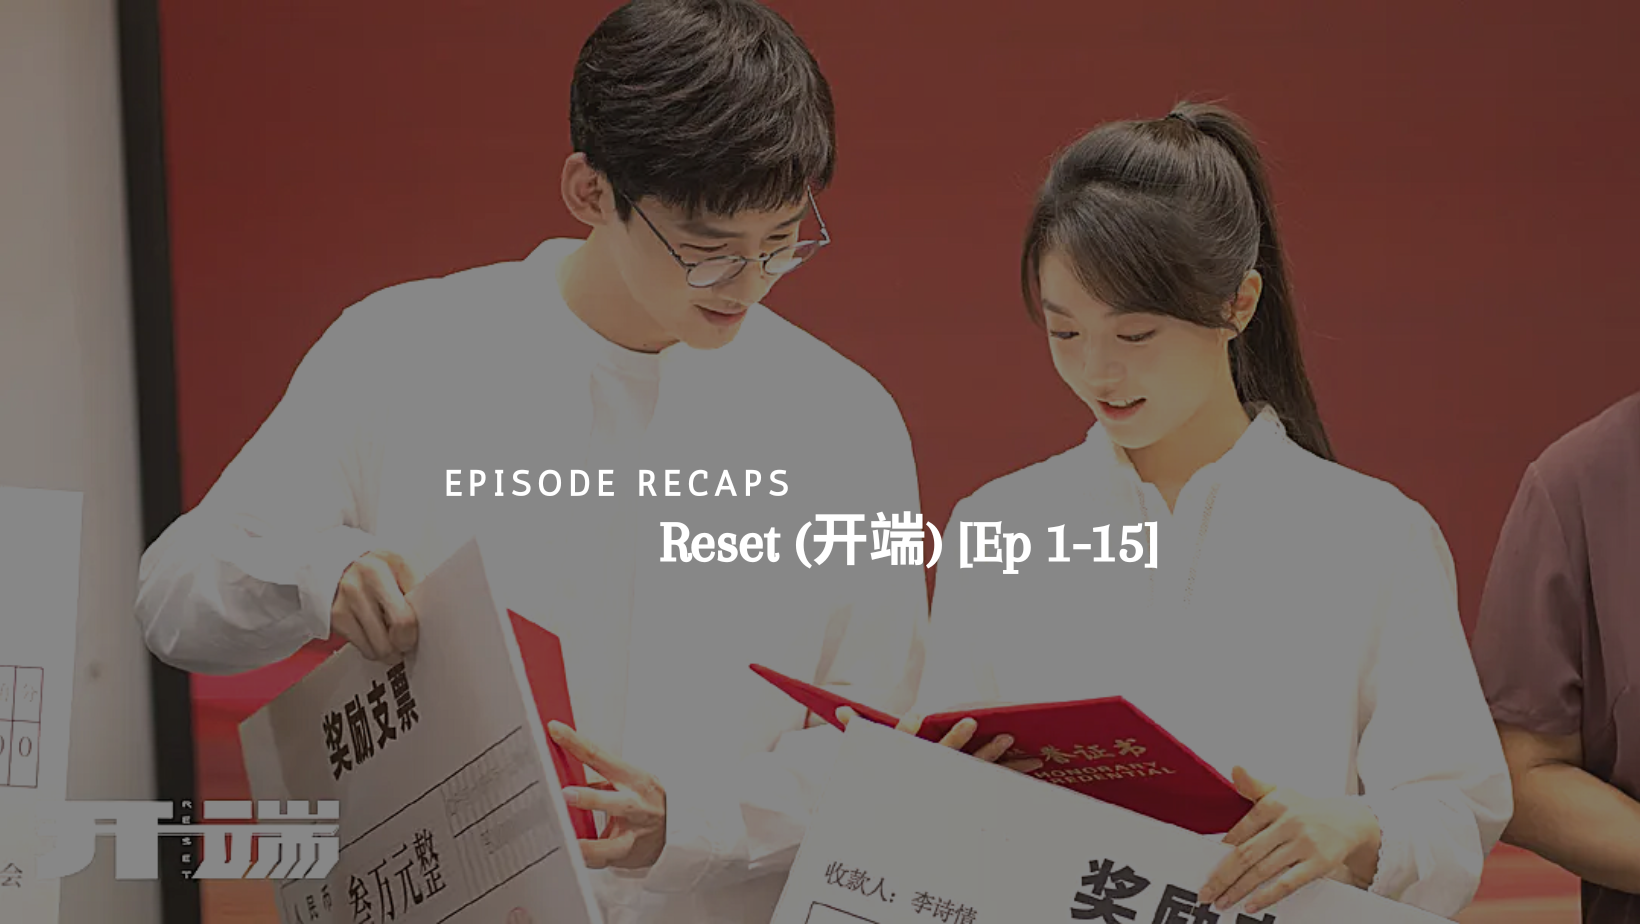 Mini Episode Recaps: Reset (开端) [Ep 1-15]